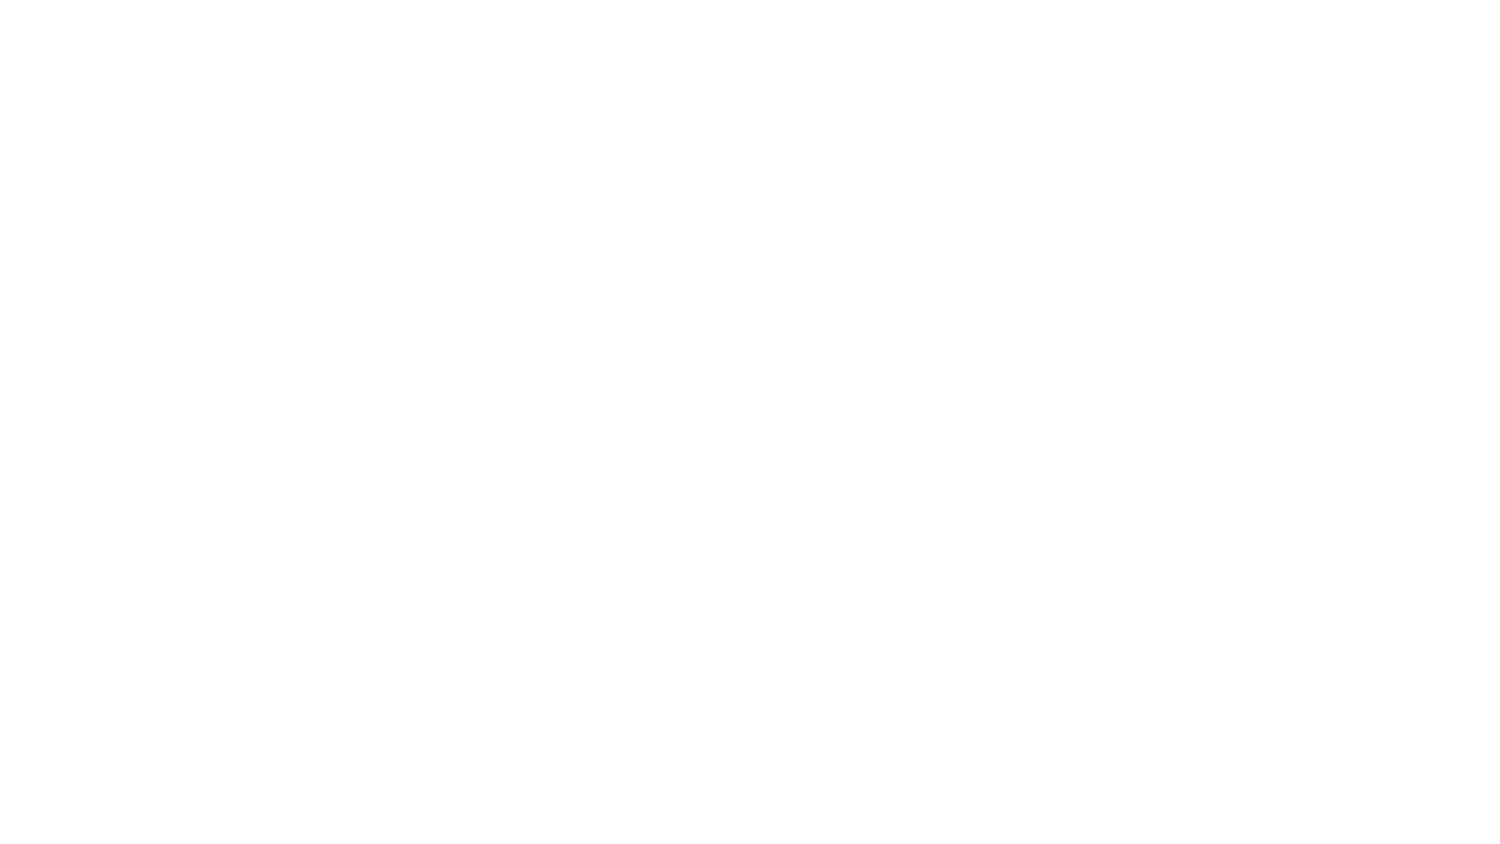 Sarah Barrios